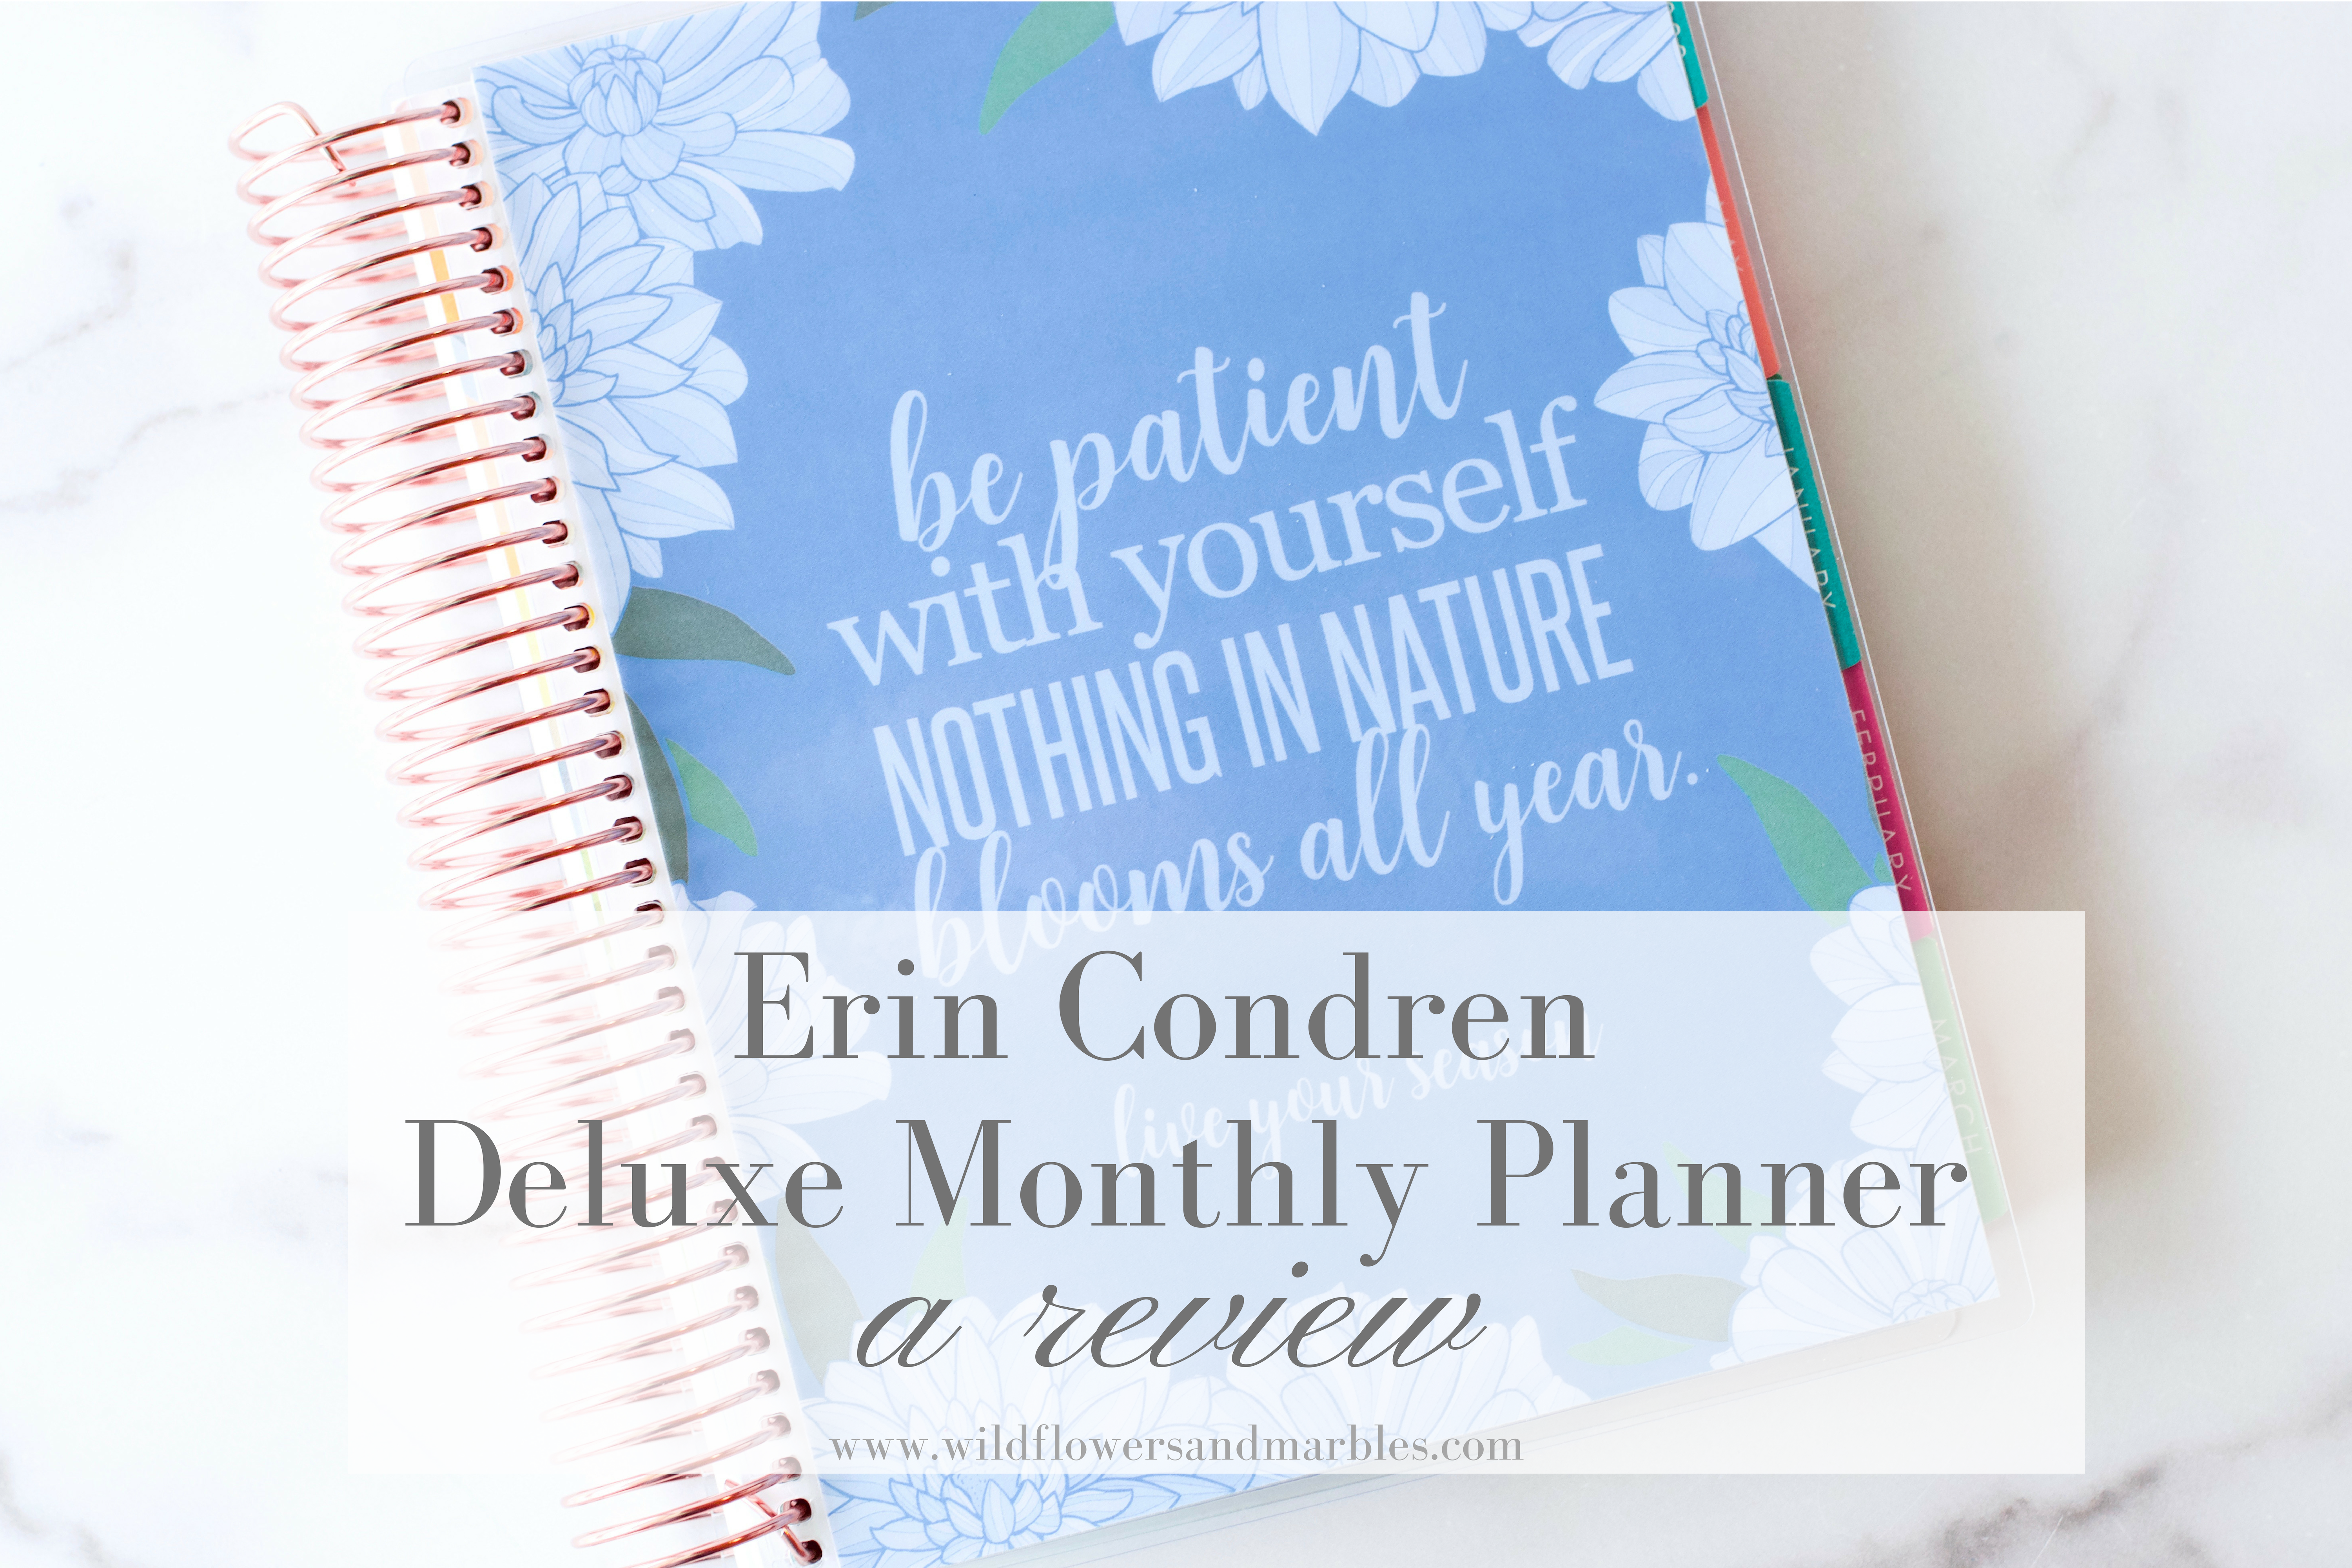 Erin Condren | Deluxe Monthly Planner Review